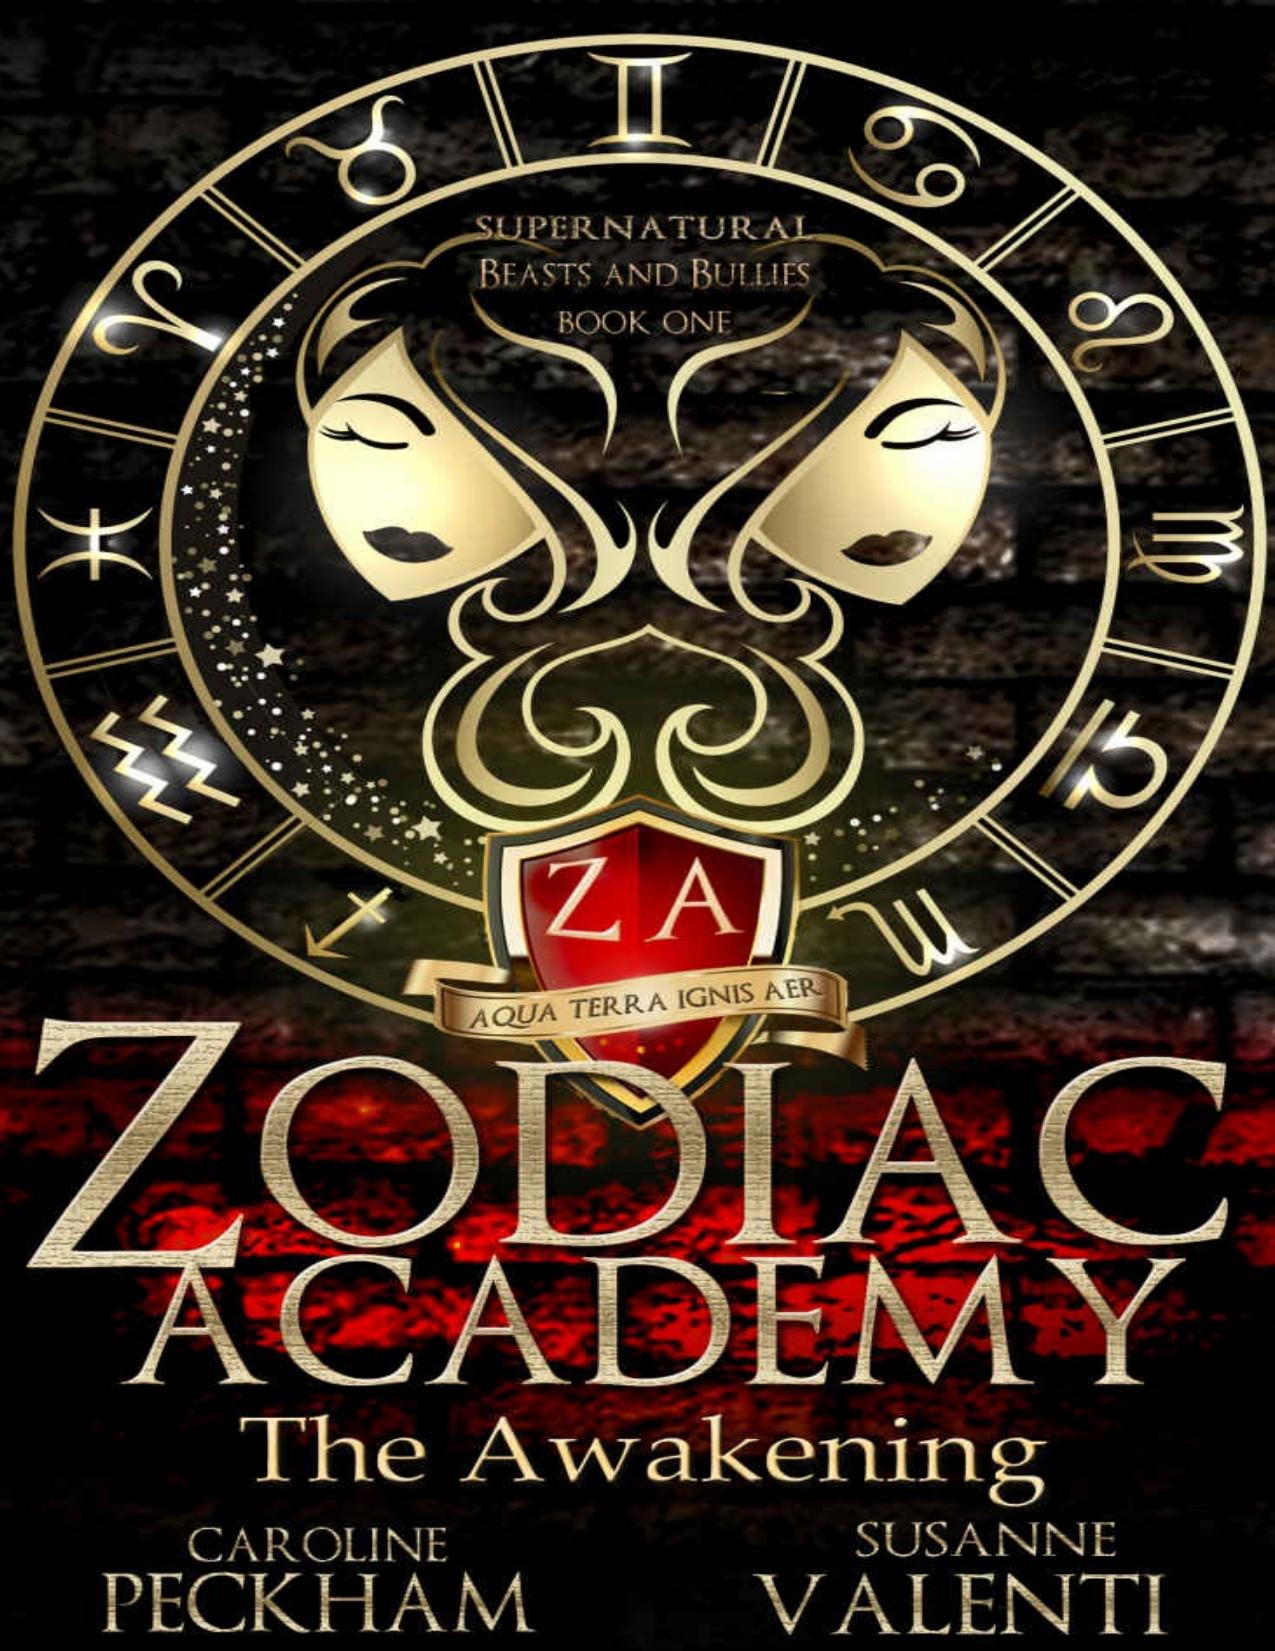 Zodiac Academy: The Awakening: An Academy Bully Romance by Caroline Peckham & Susanne Valenti